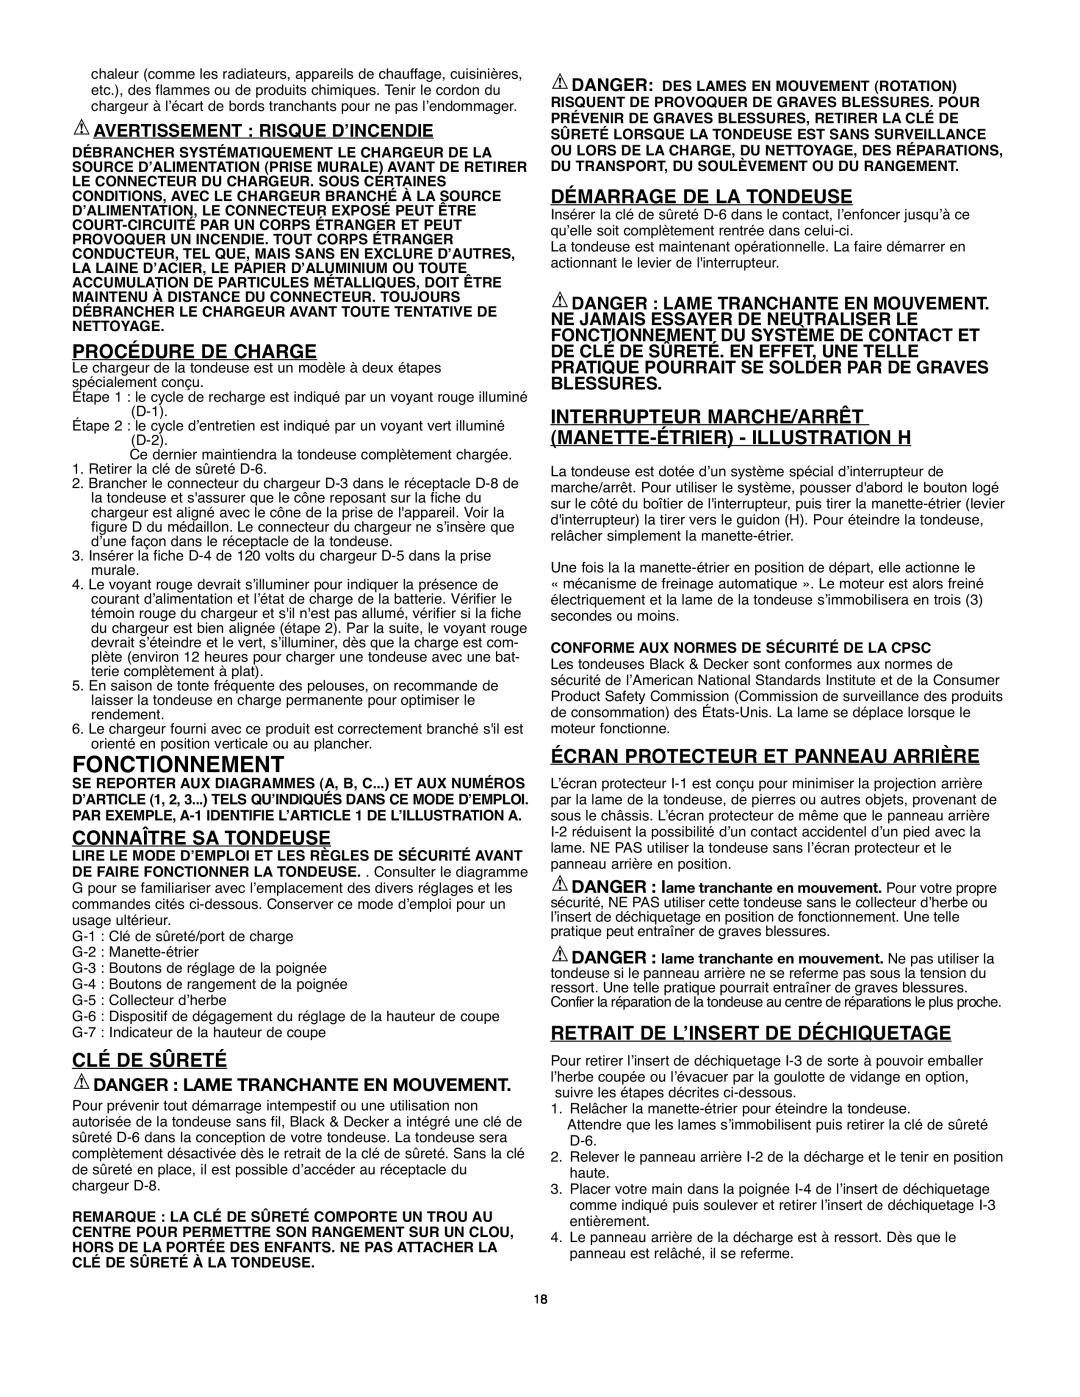 Black & Decker 90541667 instruction manual Fonctionnement, Procédure De Charge, Connaître Sa Tondeuse, Clé De Sûreté 